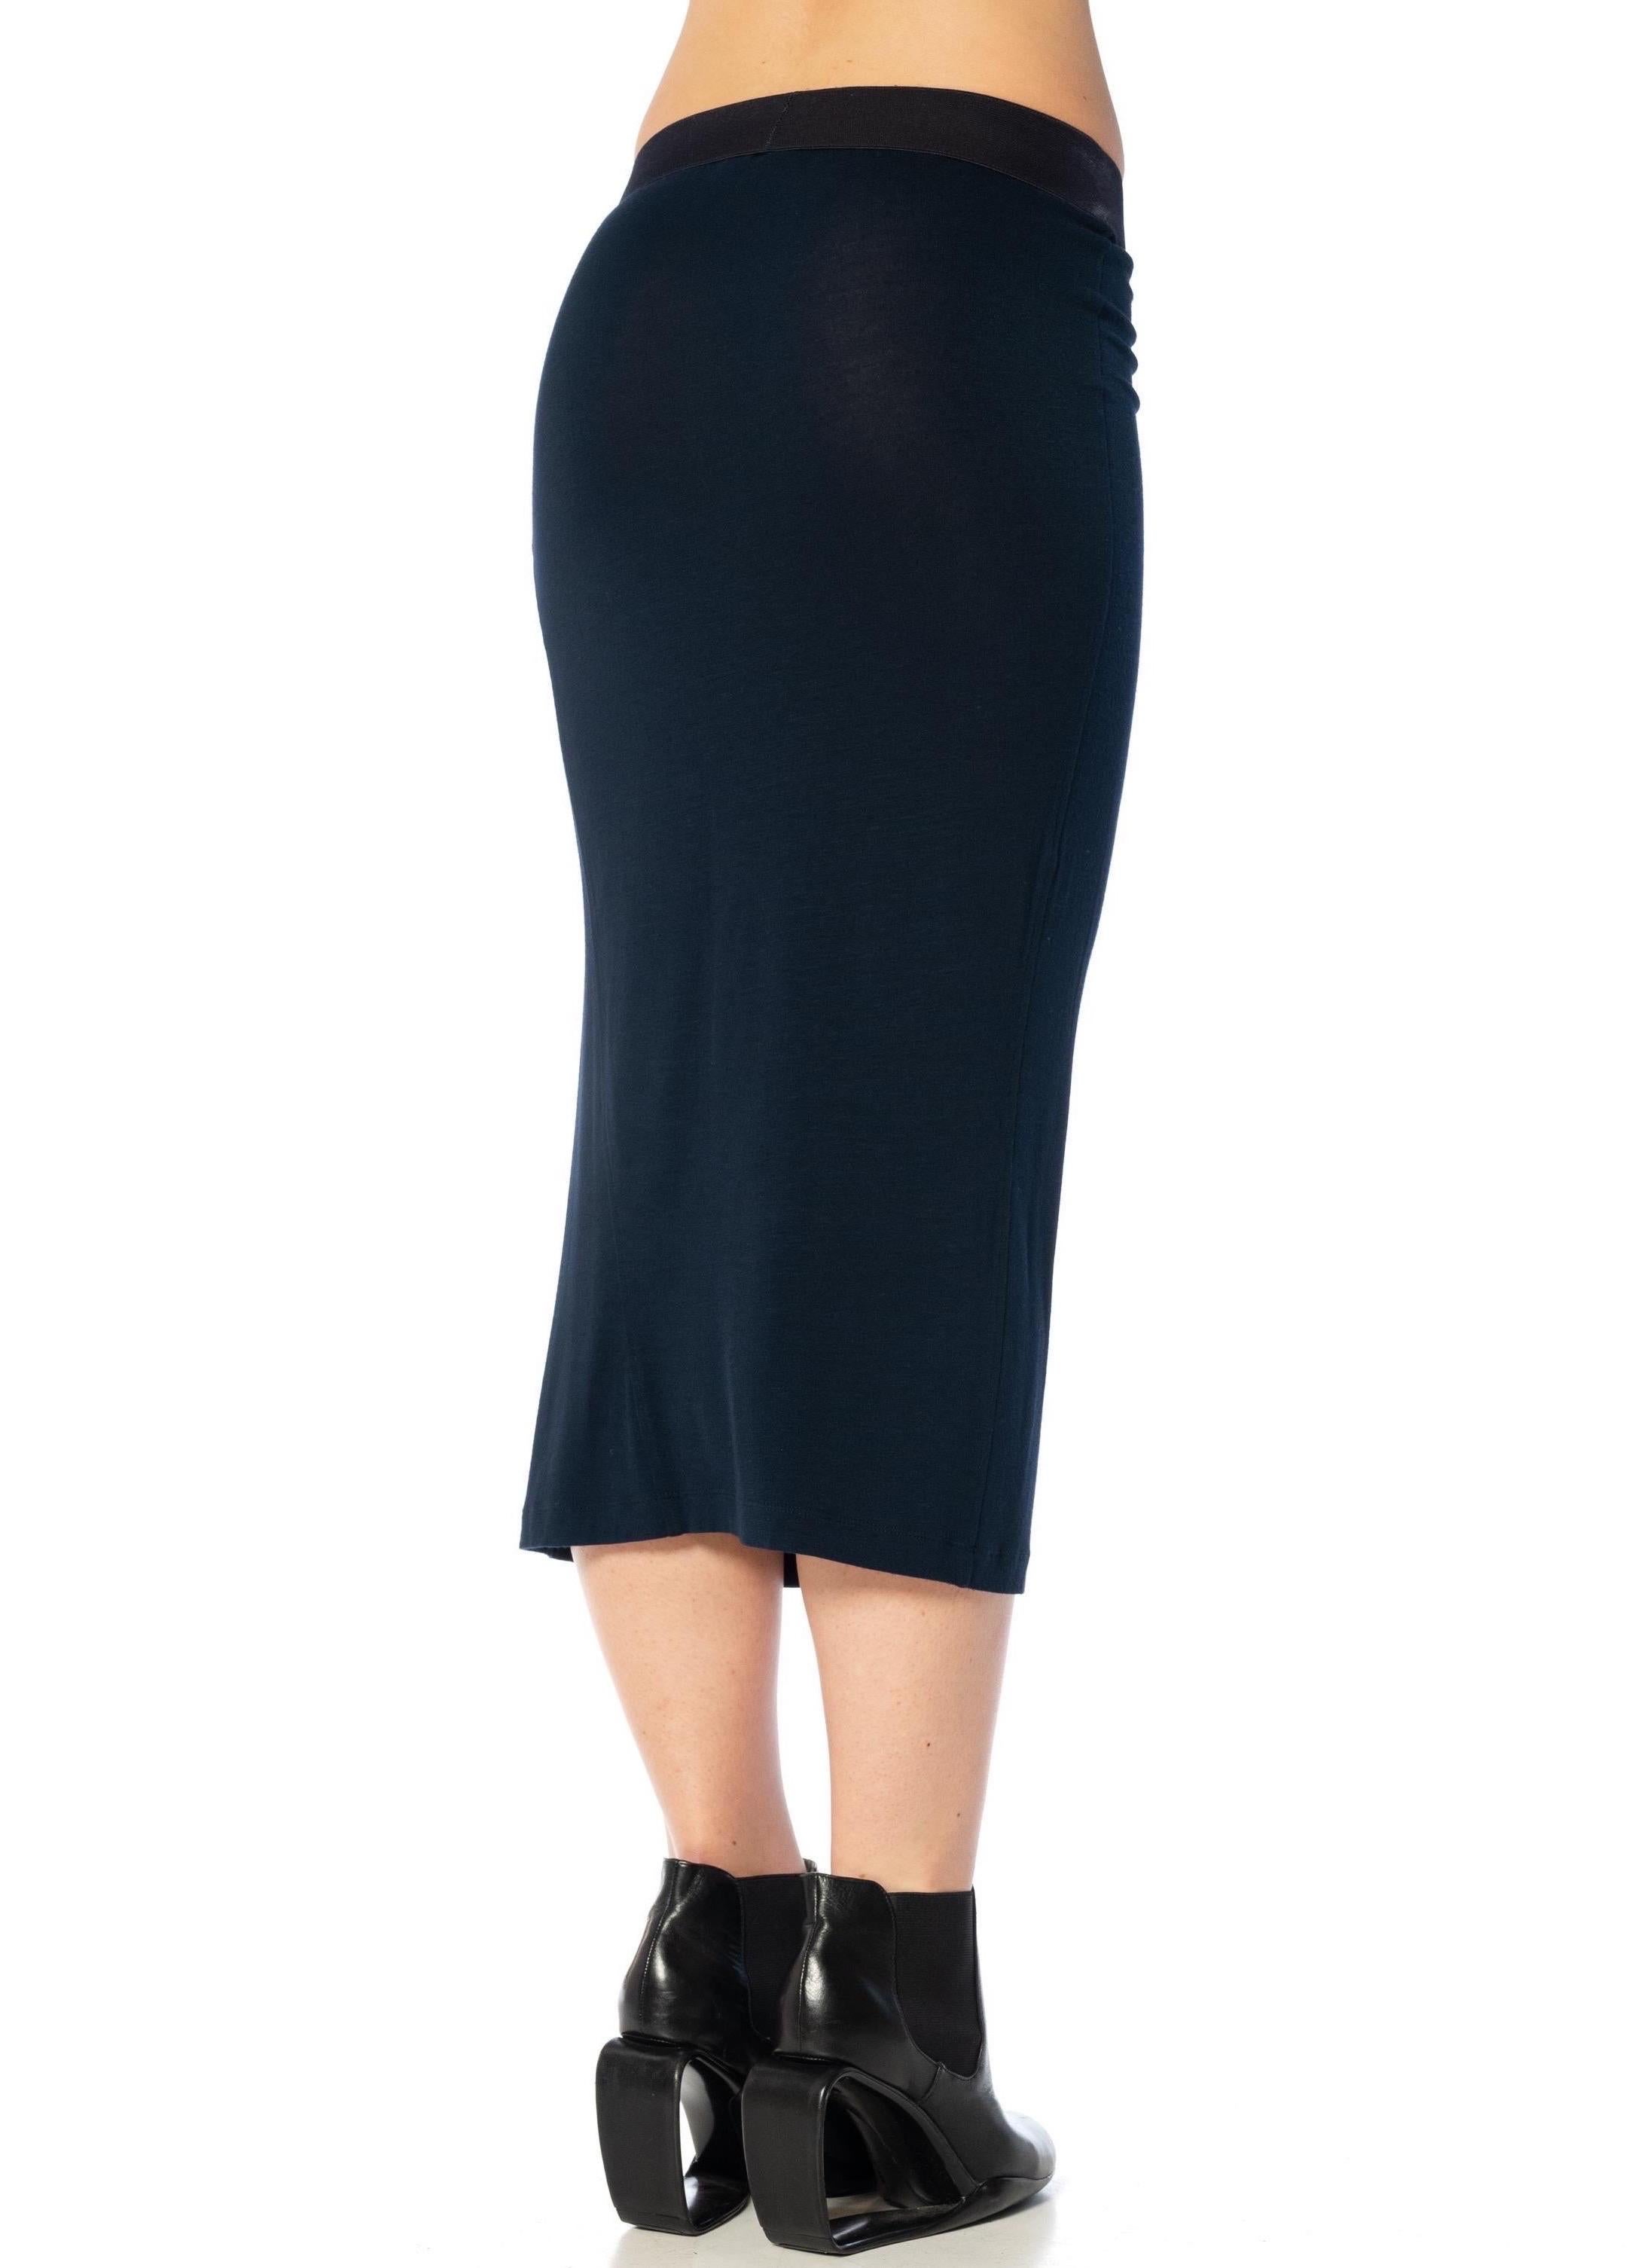 DONNA KARAN, jupe en rayonne bleu nuit avec ceinture élastique épaisse, années 2000 en vente 2